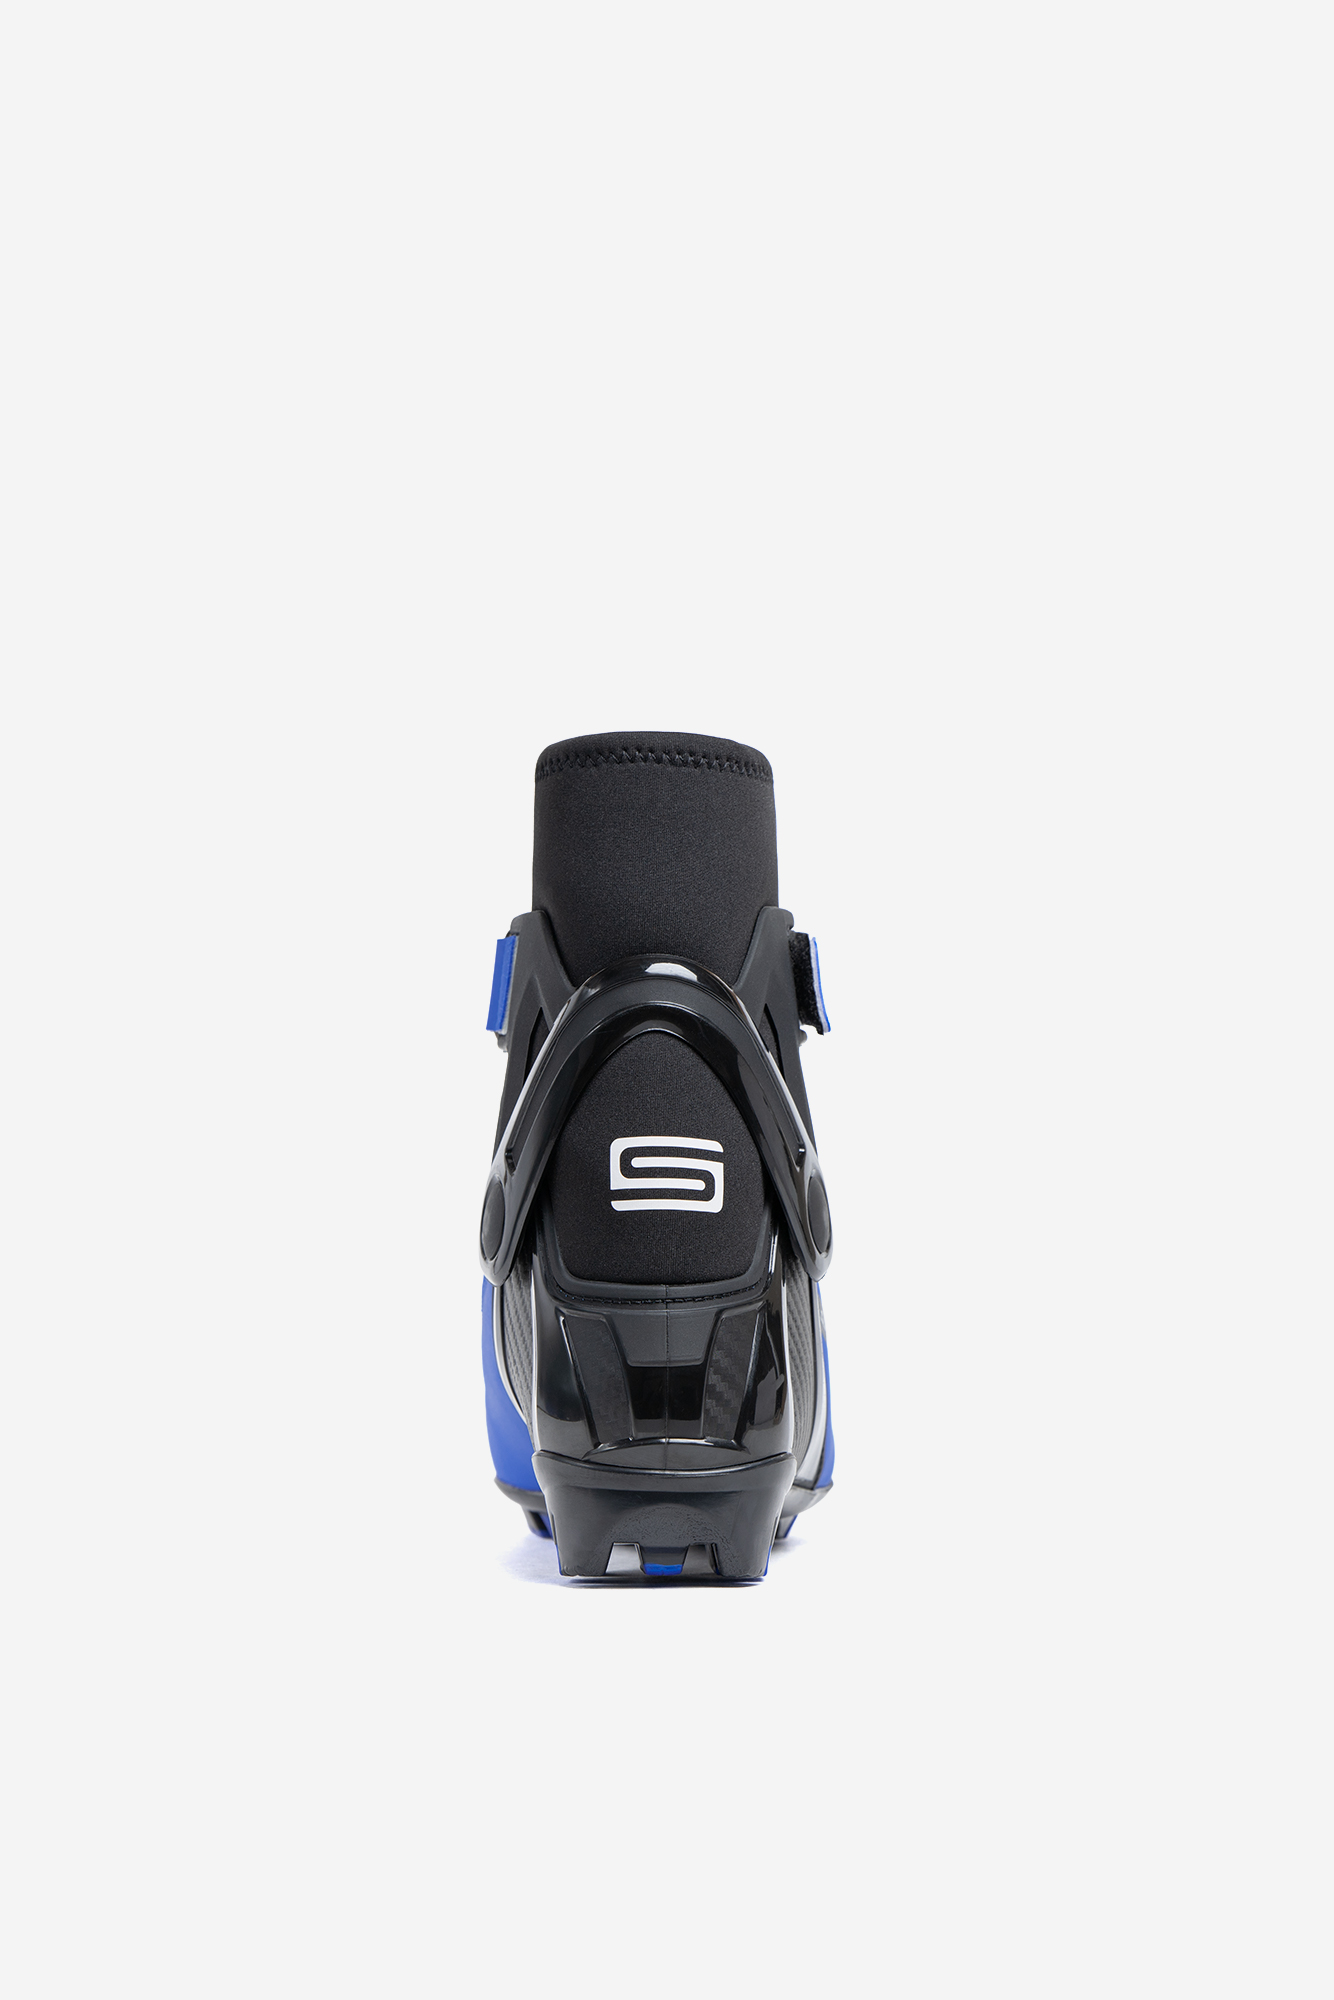 Лыжные ботинки NNN Spine Concept Combi (268/1-22) (синий) 1334_2000